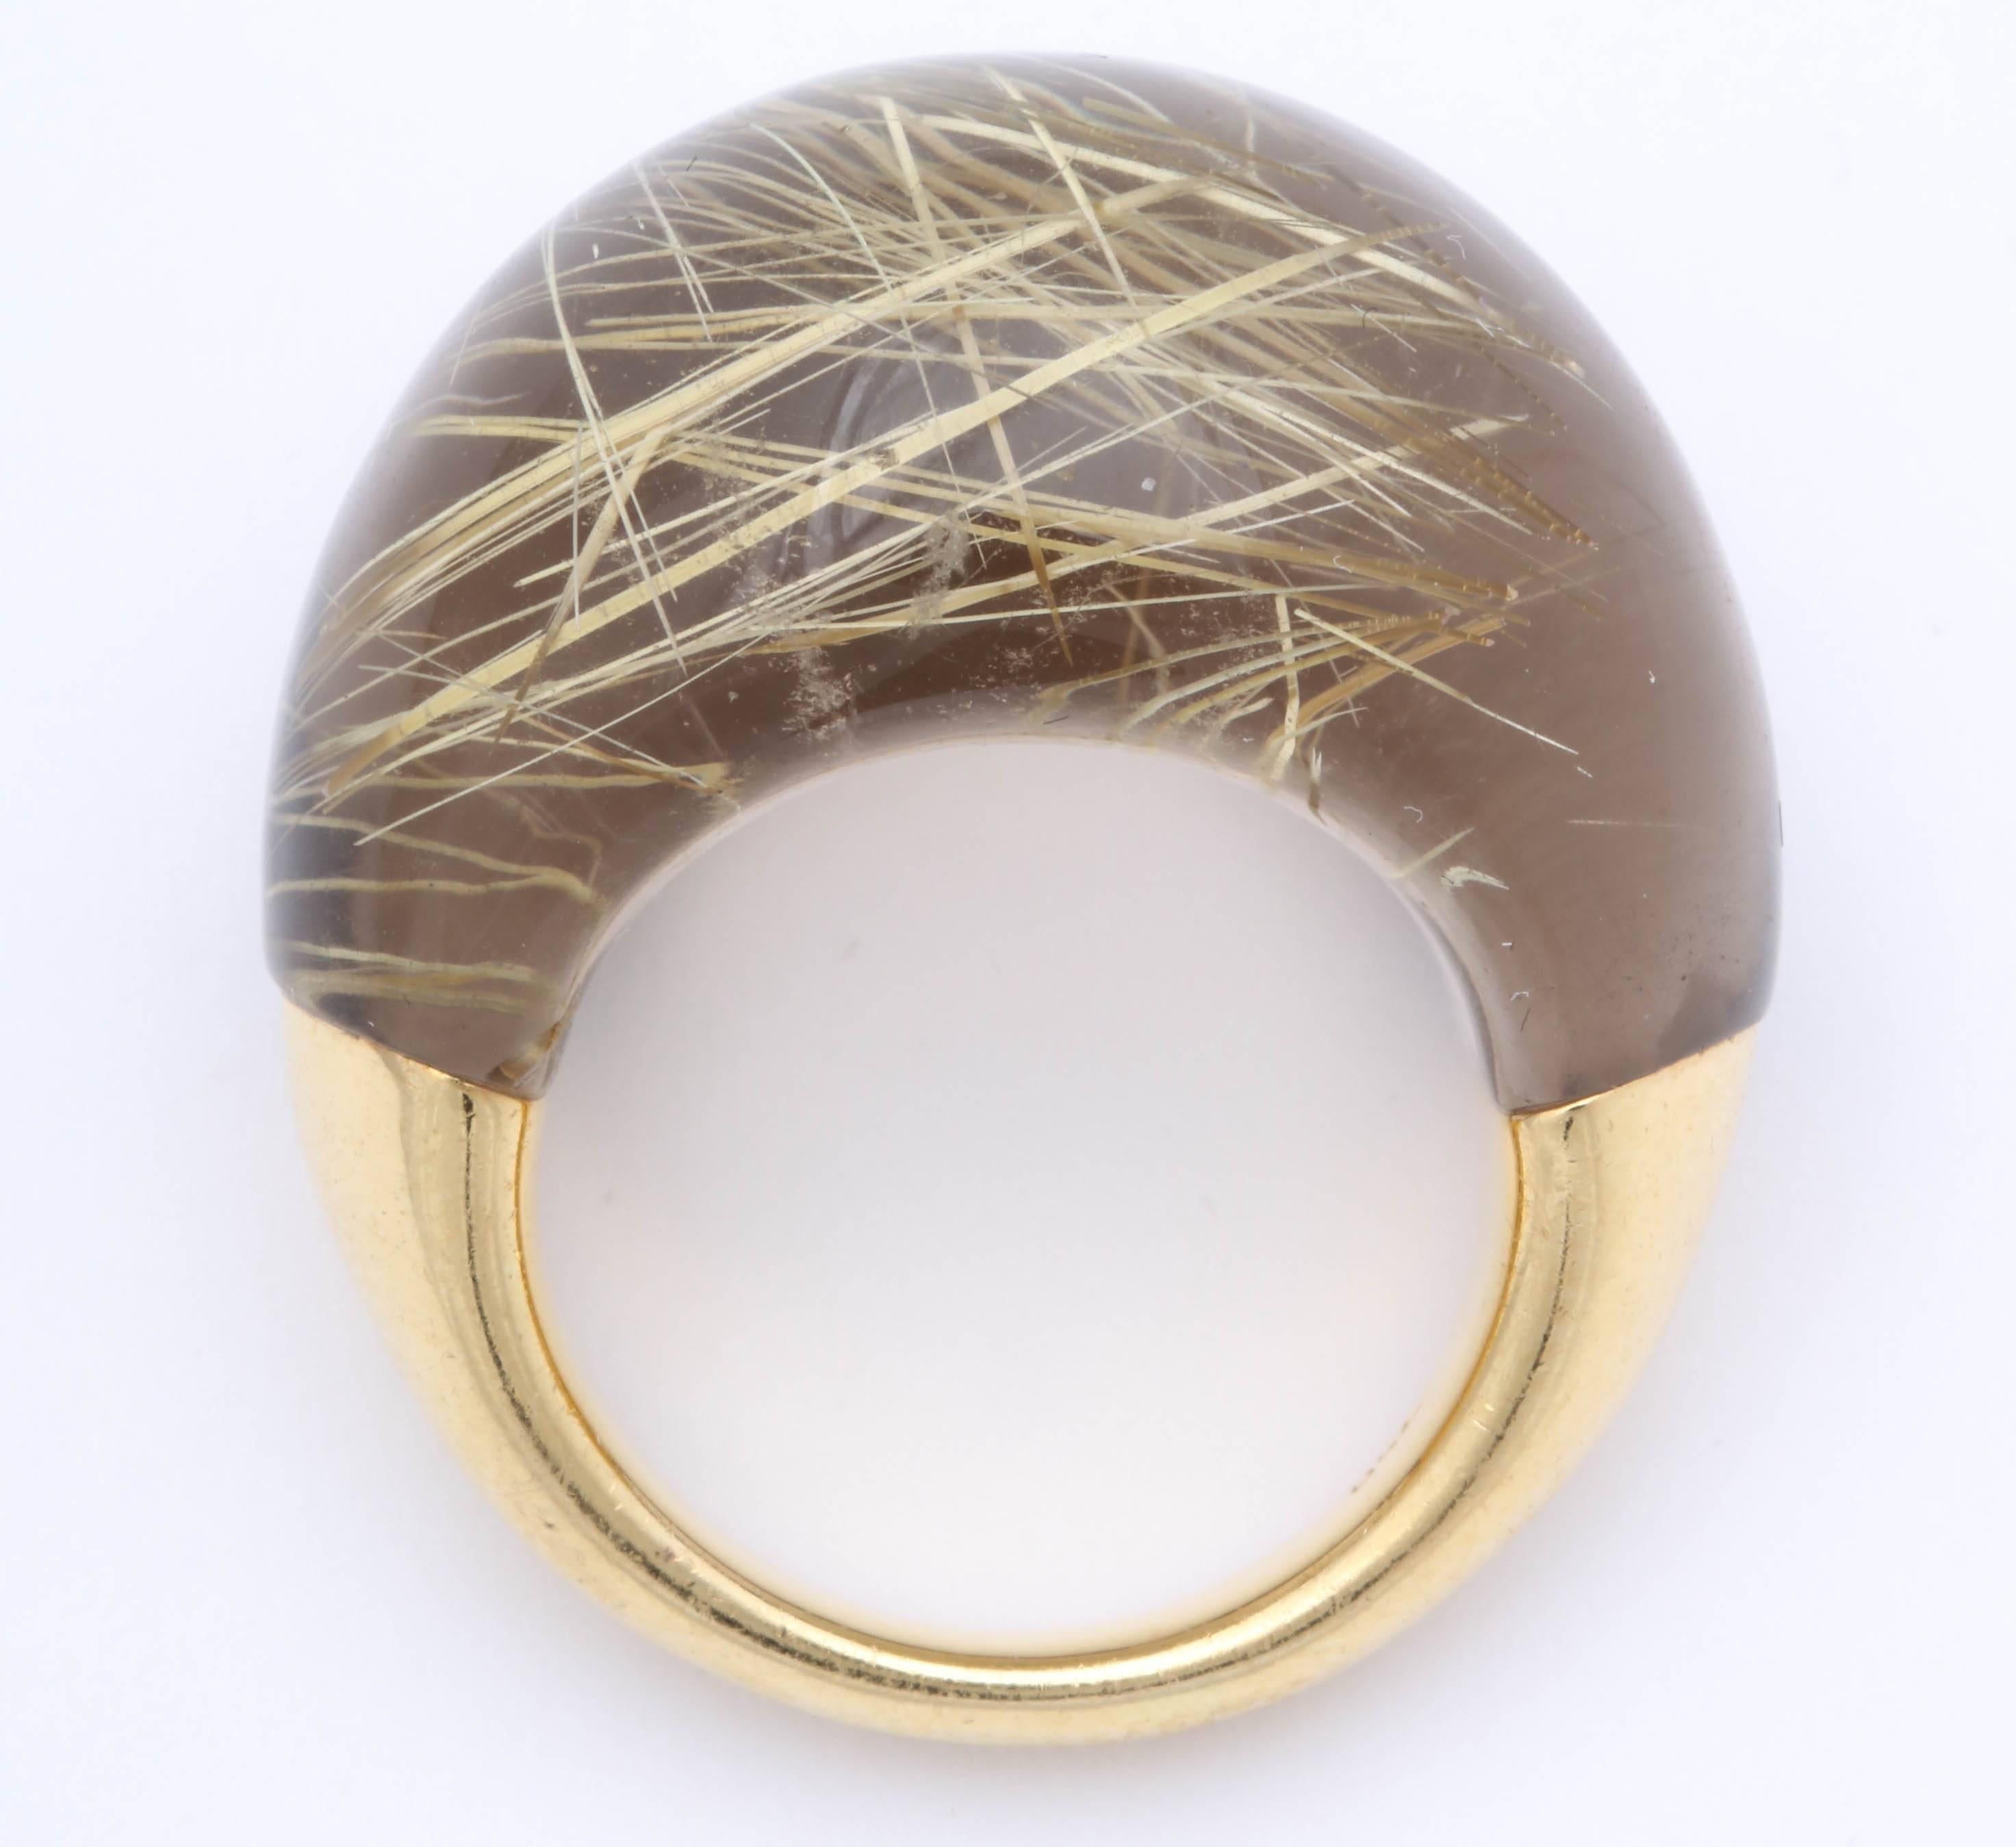 Modernistischer Ring aus 18-karätigem Gelbgold mit poliertem Rutilquarz als Kuppel   Sehr stilvoll und schick.  Honigblonder Stein mit Spuren von Quarz im Inneren. Markiert 750 für 18kt.